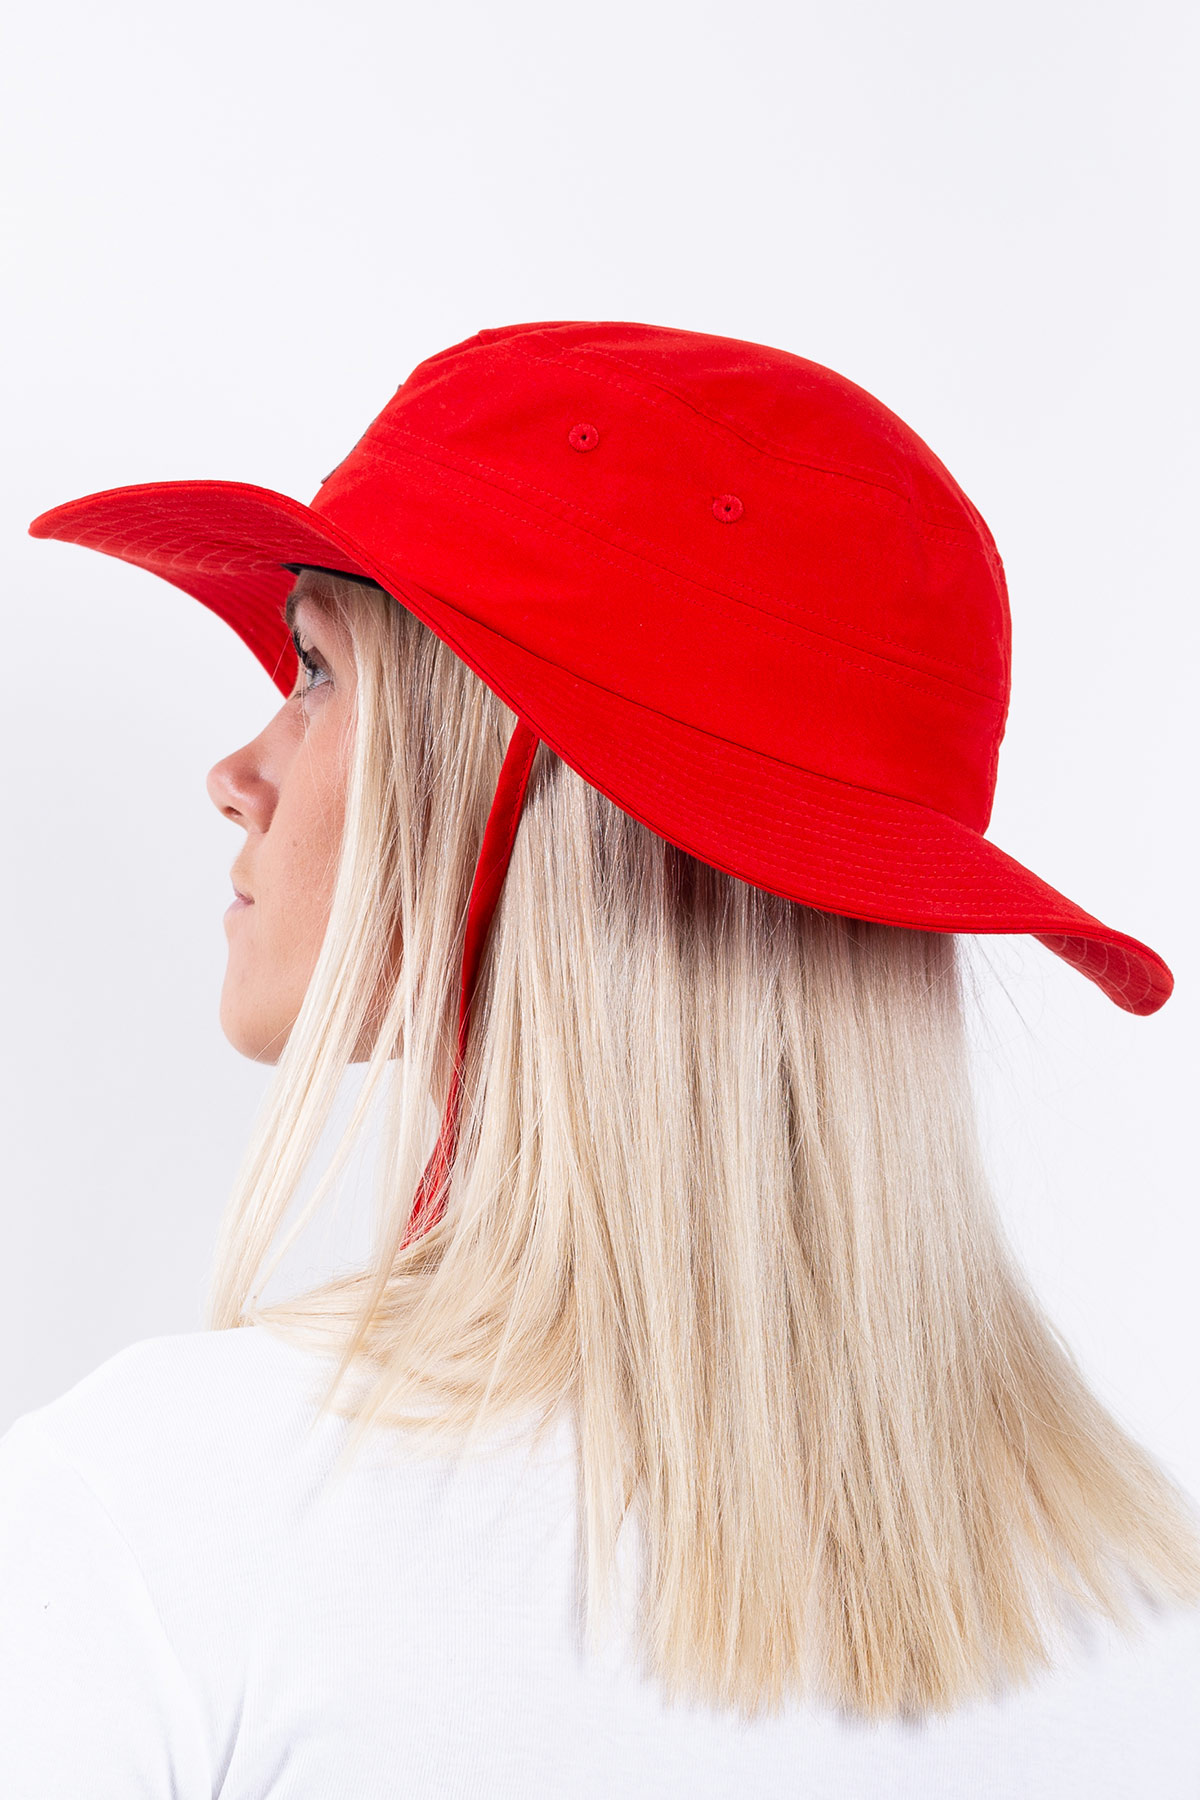 Headwear | Fishergirls' Friend Hat - Fierce Flamma | One Size